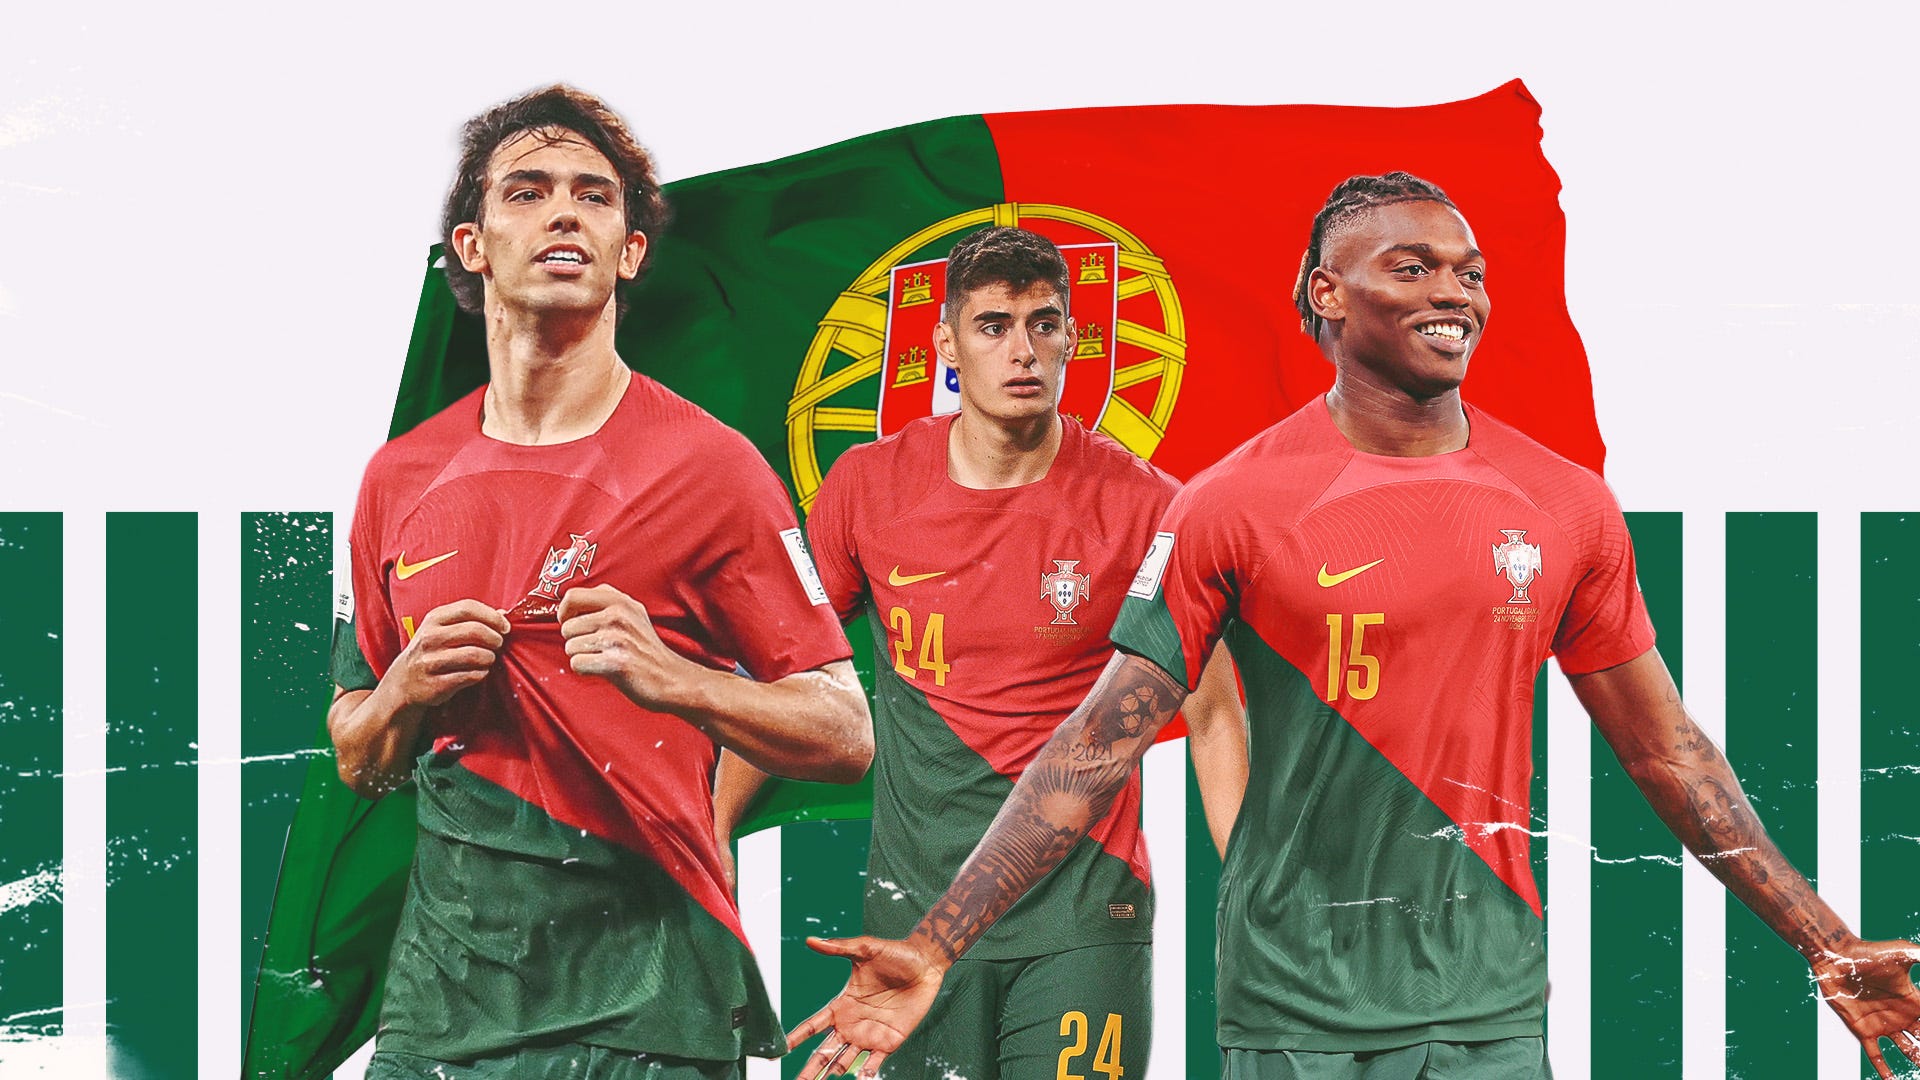 Portugal soccer legends' kits